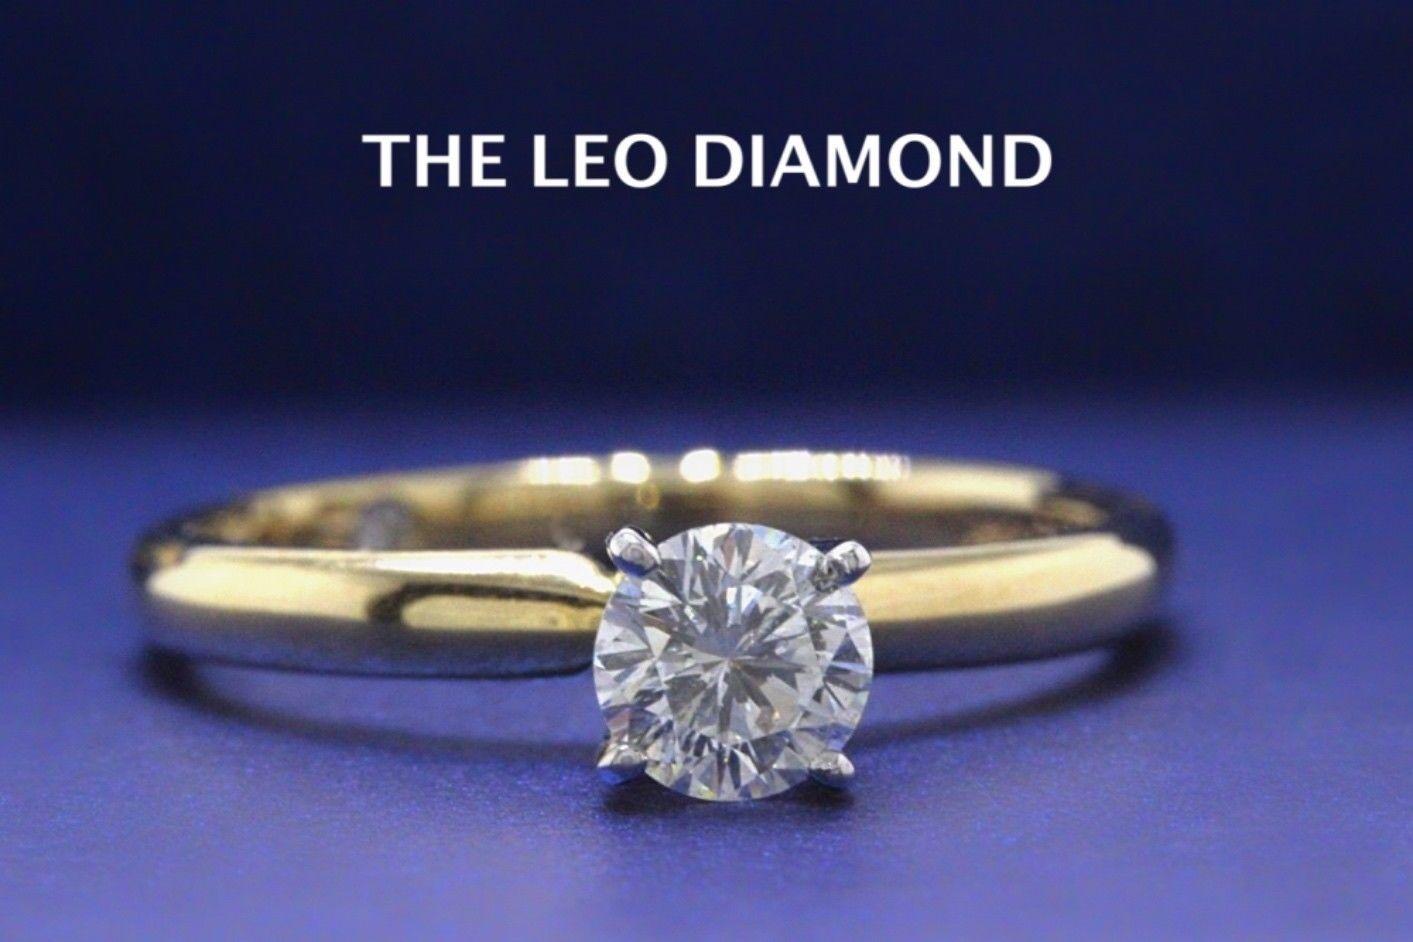 LA BAGUE DE FIANÇAILLES SOLITAIRE EN DIAMANT LÉO
Le style :  4 - Prong Solitaire
Numéro de série :  LEO251462
Certificat :  GSI # 348950005
Métal : Or jaune 14K
Taille :  6.75 - Sensible
Poids total en carats :  0.45 CTS
Forme du diamant :  Leo